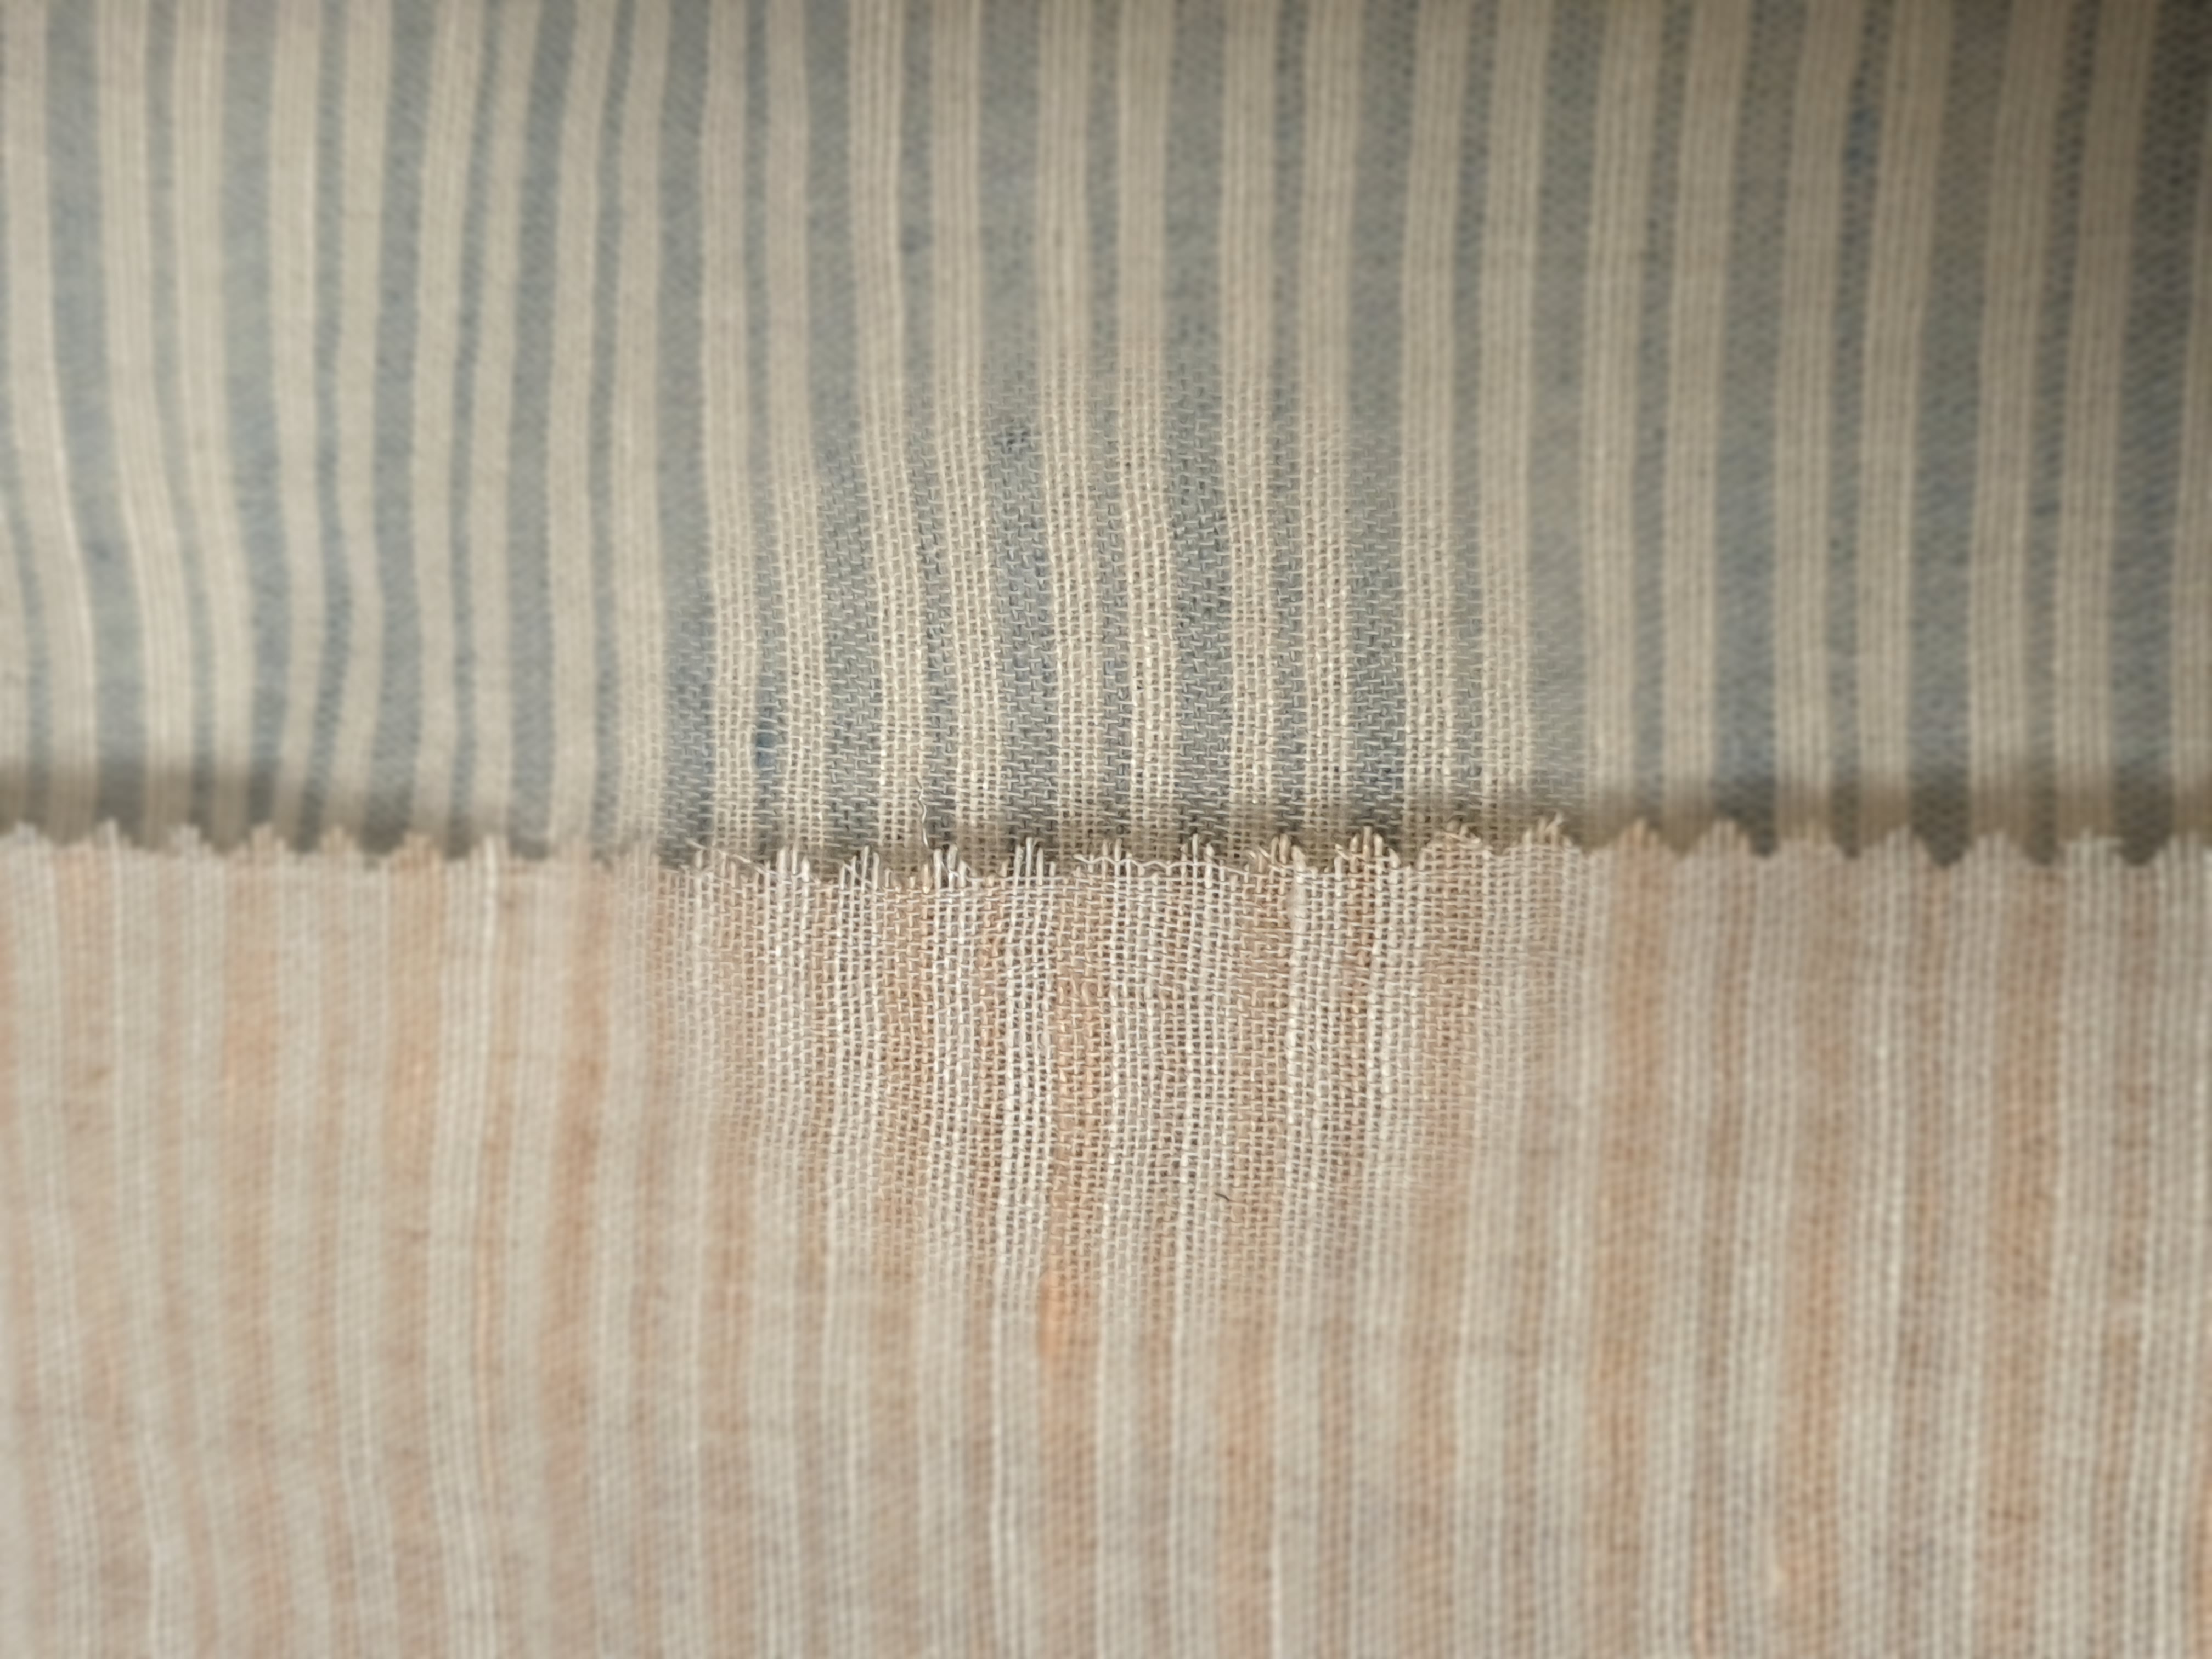 ART 7474 barre shirt linen blend fashion fabric WIDTH cm145 WEIGHT gr160 - gr110 square meter - COMPOSITION 55 linen 45 viscose - blue 300mts – pink 200mts